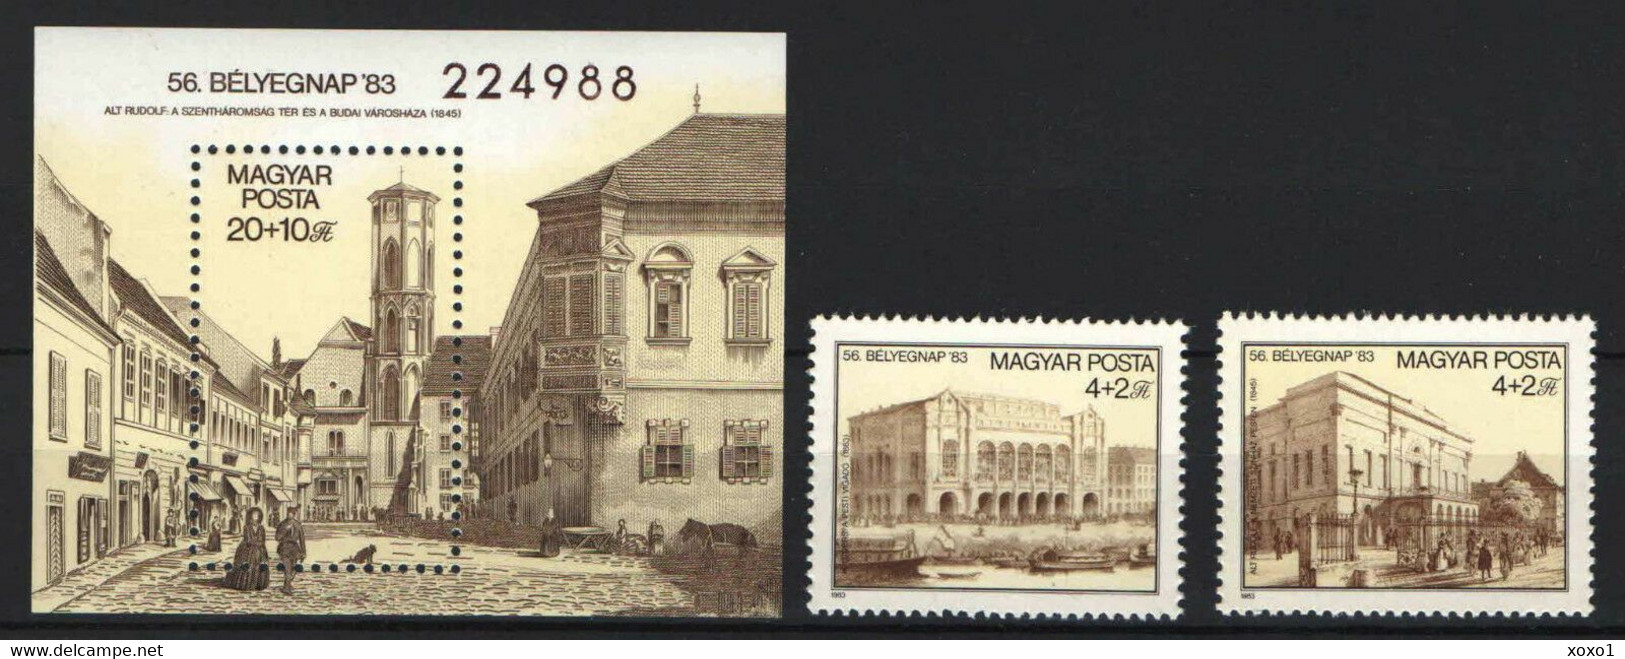 Hungary 1983 MiNr. 3632 - 3634(Block 166) Ungarn Philately Stamp's Day, Architecture, Engraving 2v + S\sh MNH ** 7.40 € - Gravuren